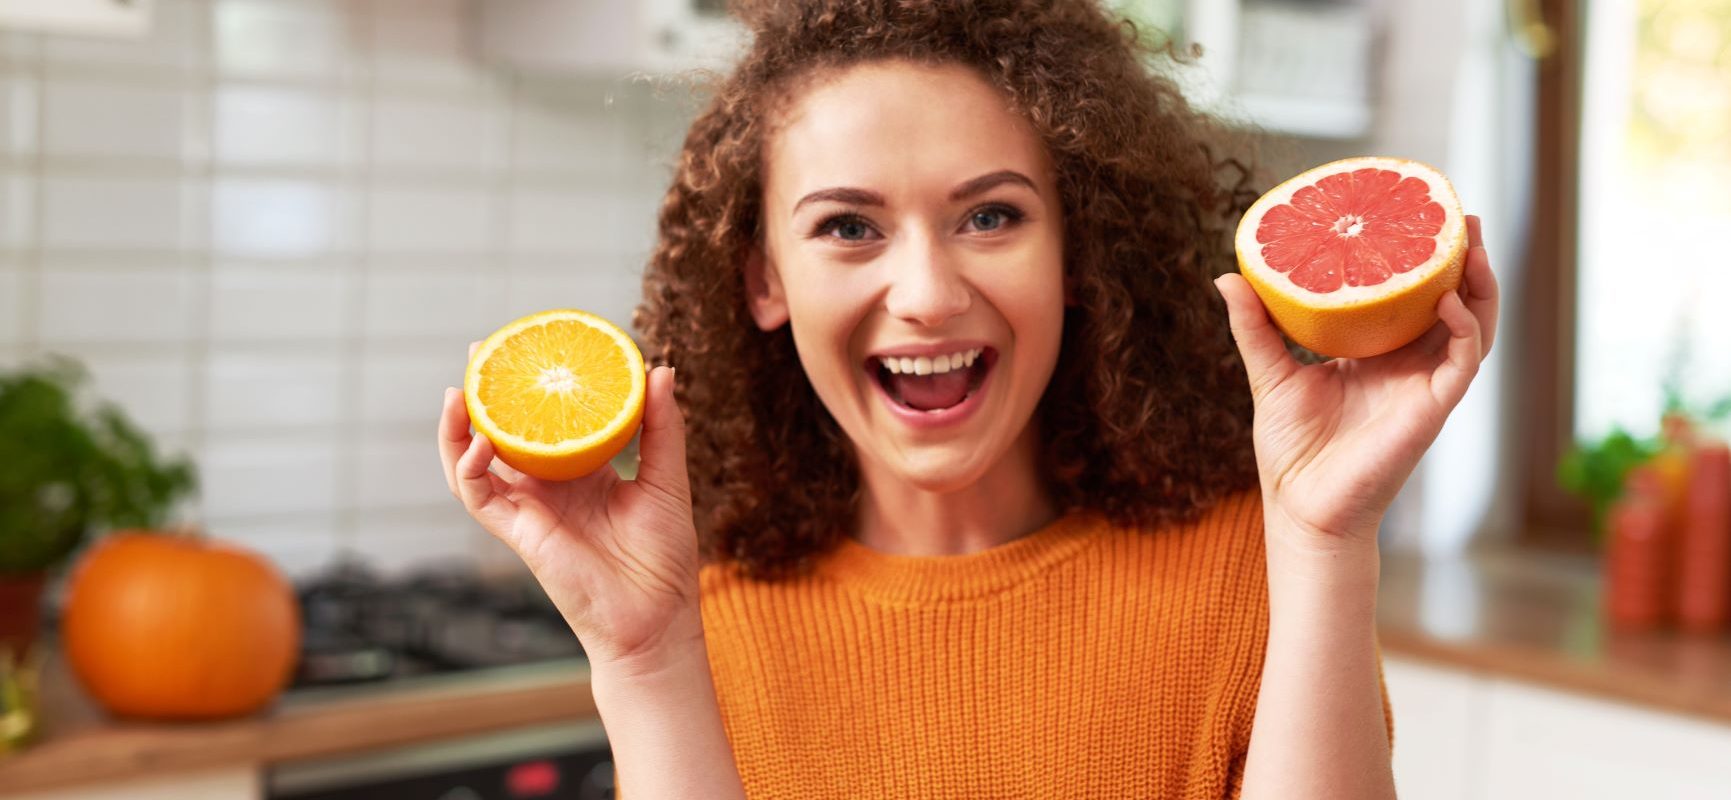 Niedobór witaminy C - jak rozpoznać objawy? Uśmiechnięta kobieta w kręconych włosach i pomarańczowym swetrze trzyma w rękach przepołowione cytrusy, za nią widać kuchnię.